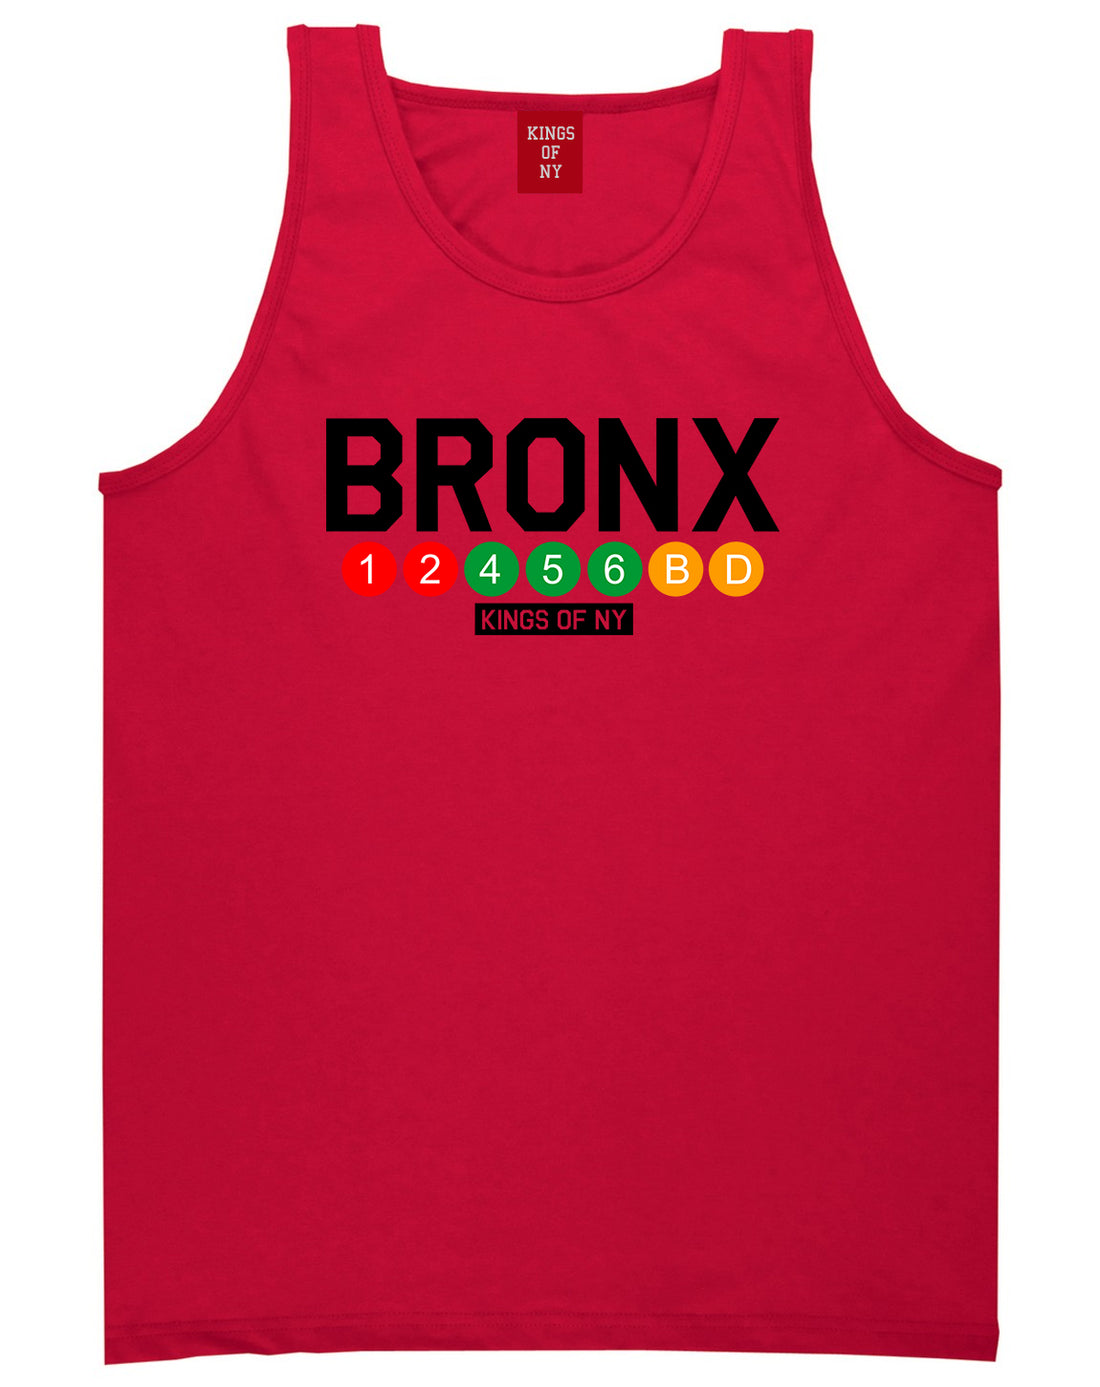 Bronx Transit Logos Tank Top Shirt in Red